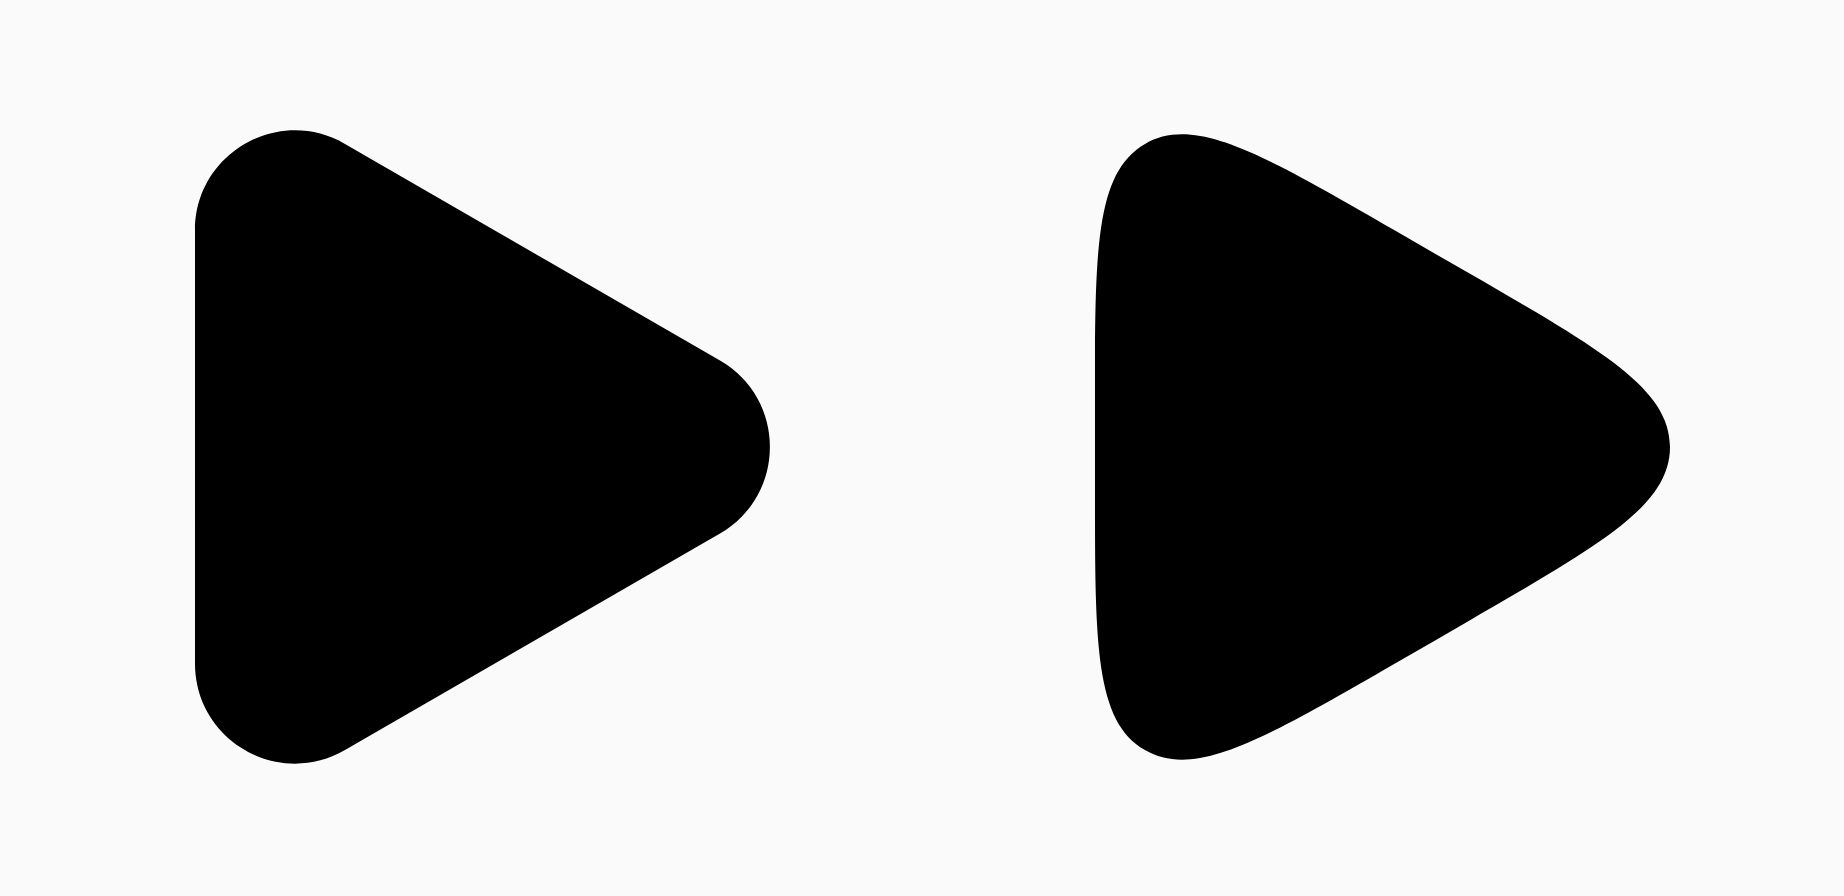 2 tam giác màu đen cho thấy sự khác biệt về tham số làm mượt.